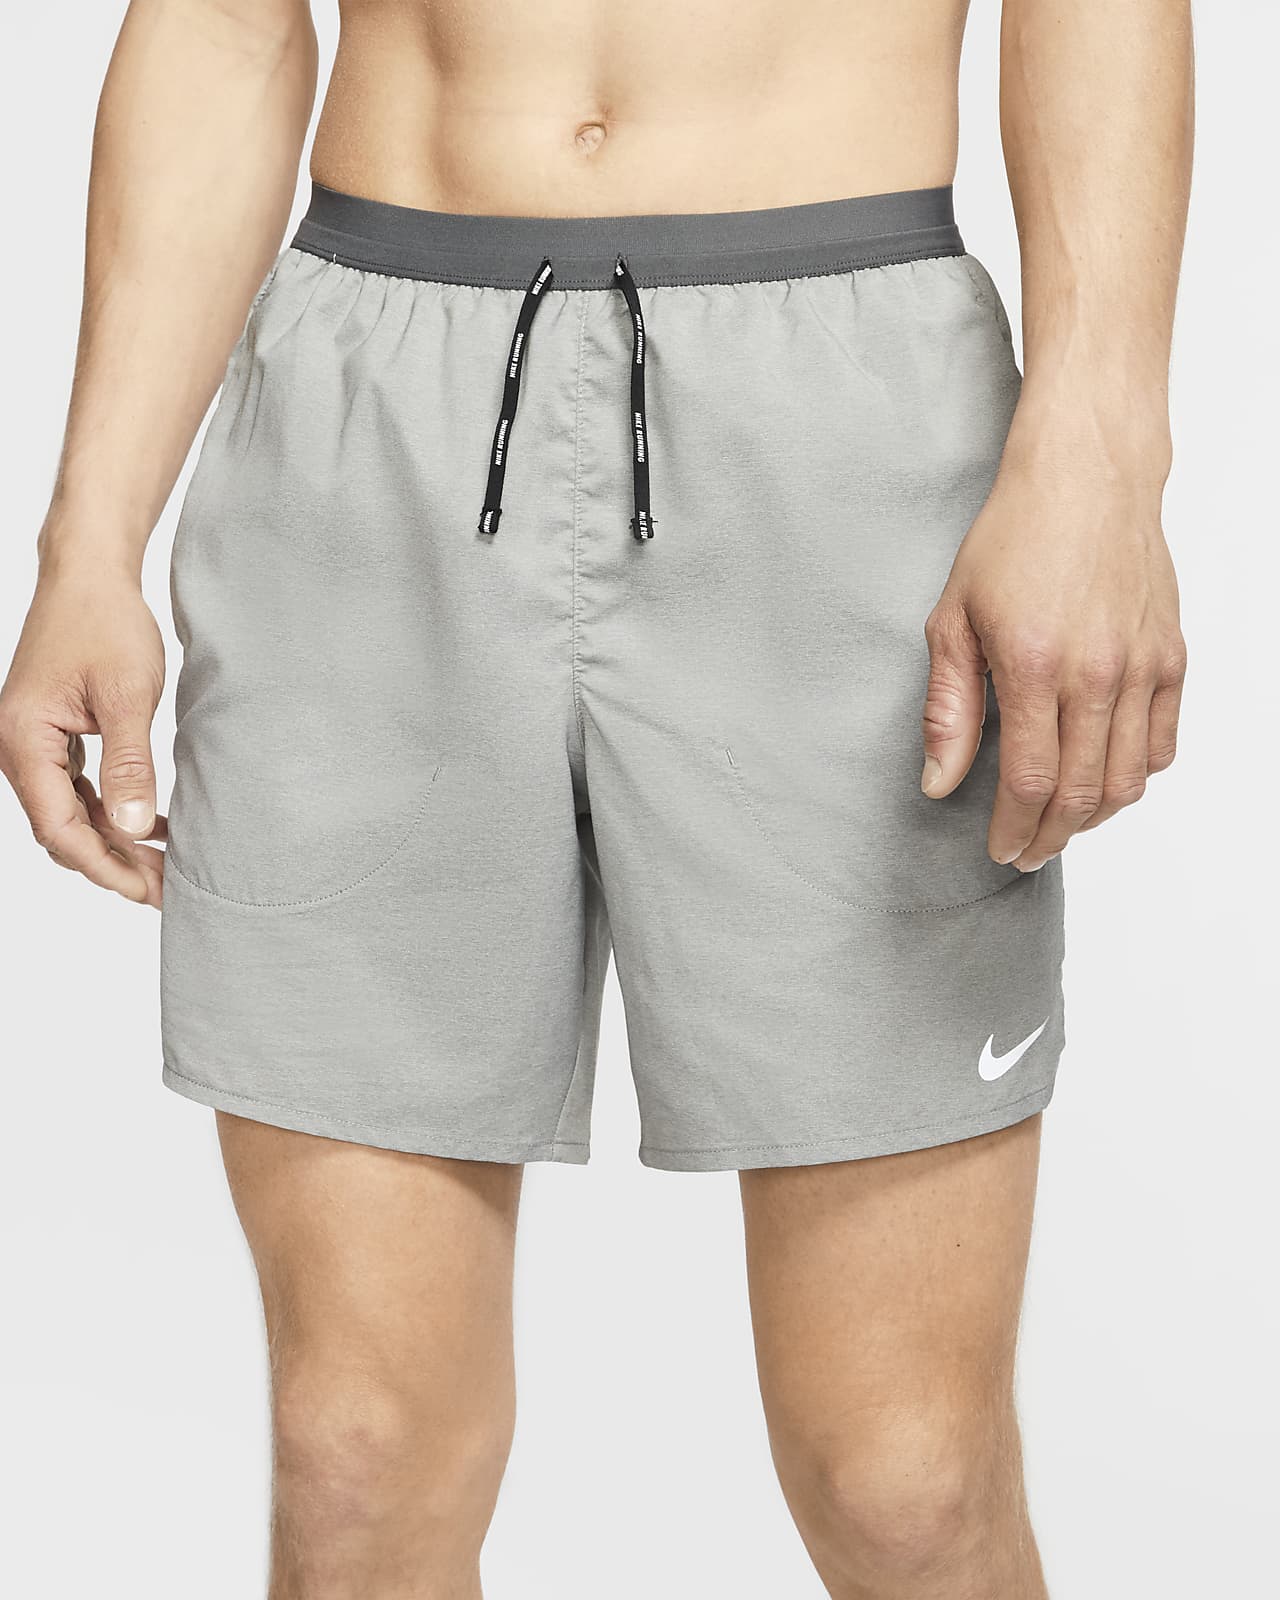 Shorts de running con malla interior para hombre Nike Flex Stride. Nike.com